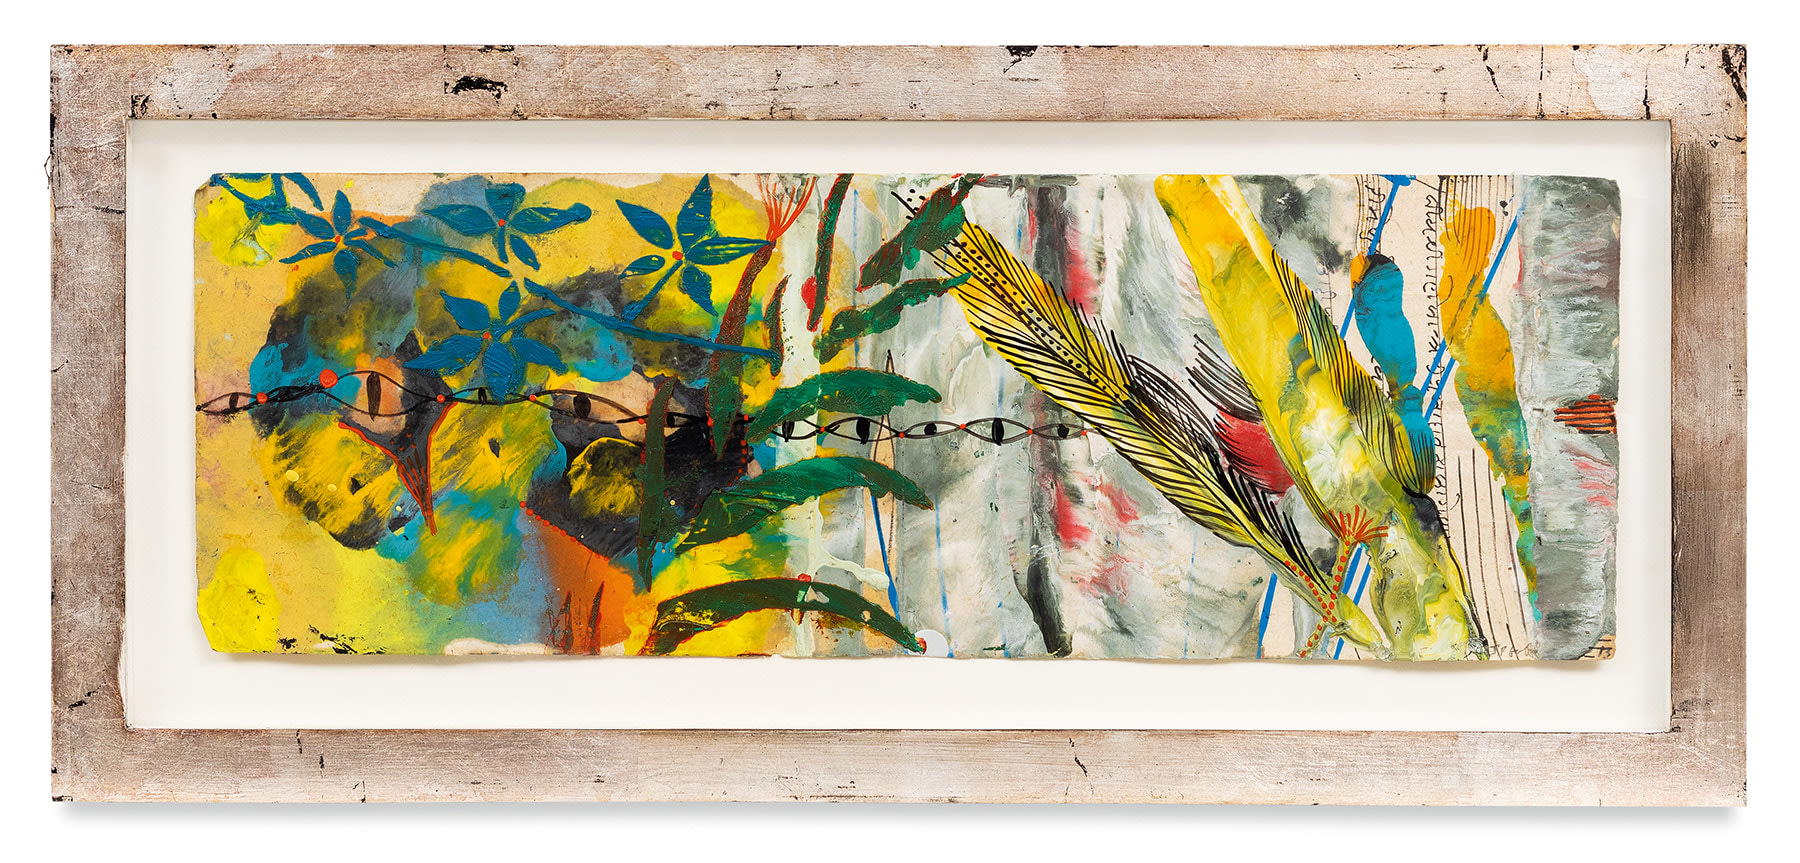 Raga 10, 2013,&nbsp;Oil stick, encaustic, vintage Indian paper, in artist&#039;s frame,&nbsp;9 7/8 x 21 7/8 inches,&nbsp;25.1 x 55.6 cm,&nbsp;MMG#30625